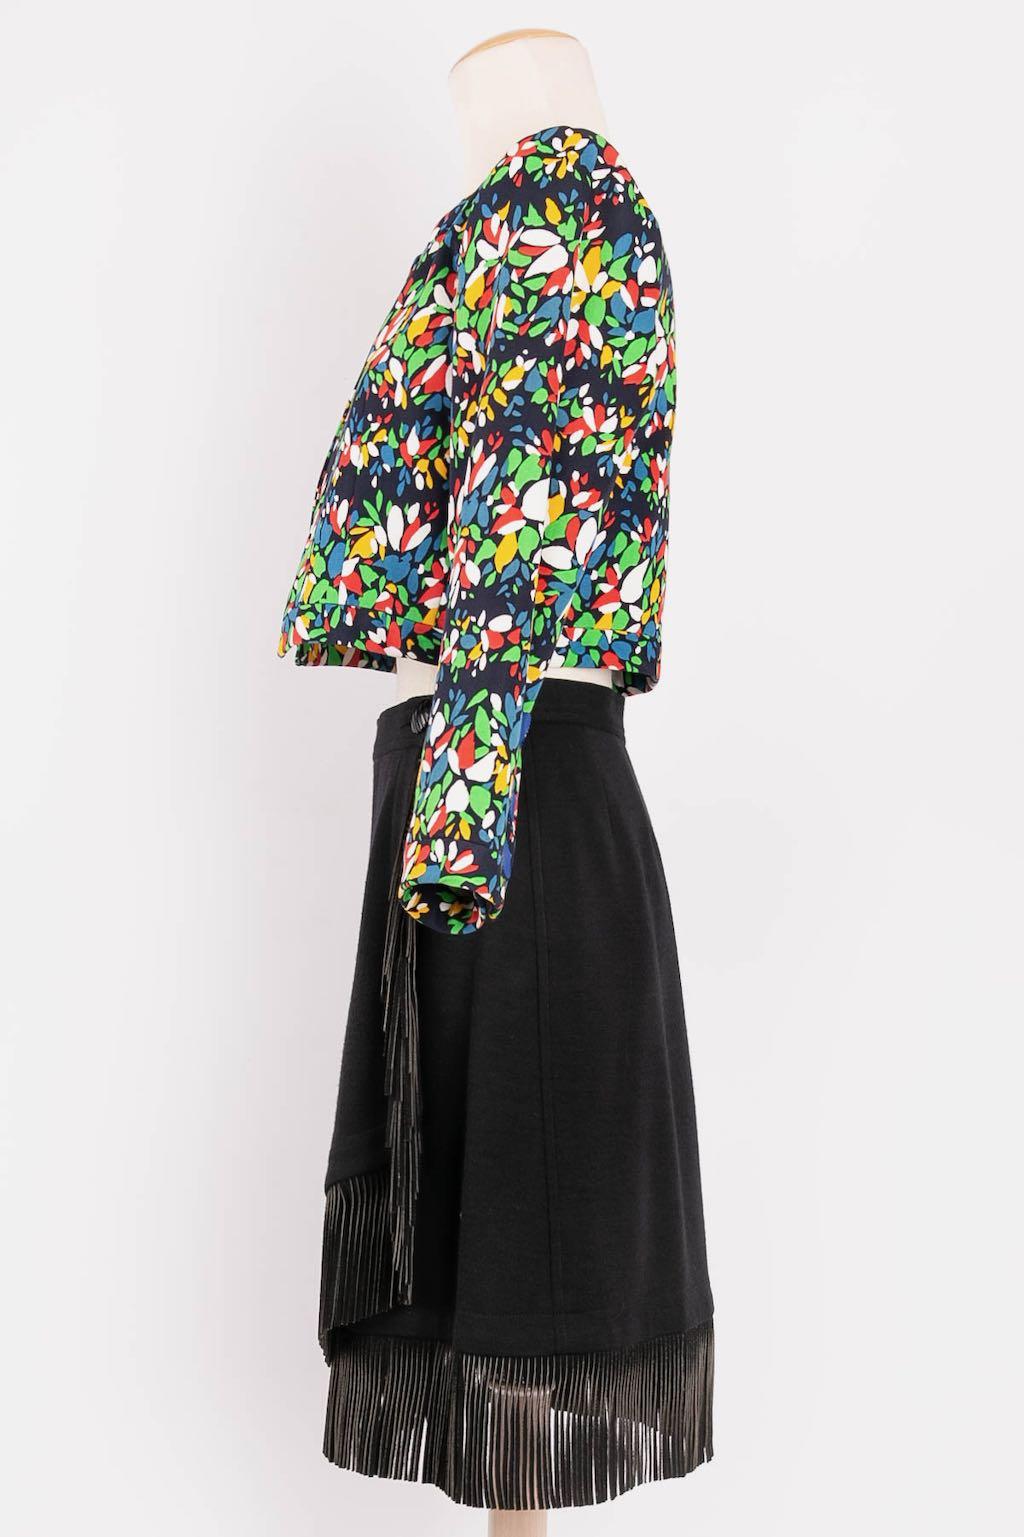 Yves Saint Laurent (Made in France) - Set aus Baumwolle und Wolle. Winter Collection'S 1992. Größe 36FR.

Zusätzliche Informationen: 
Abmessungen: Jacke: Schultern: 38 cm (14.96